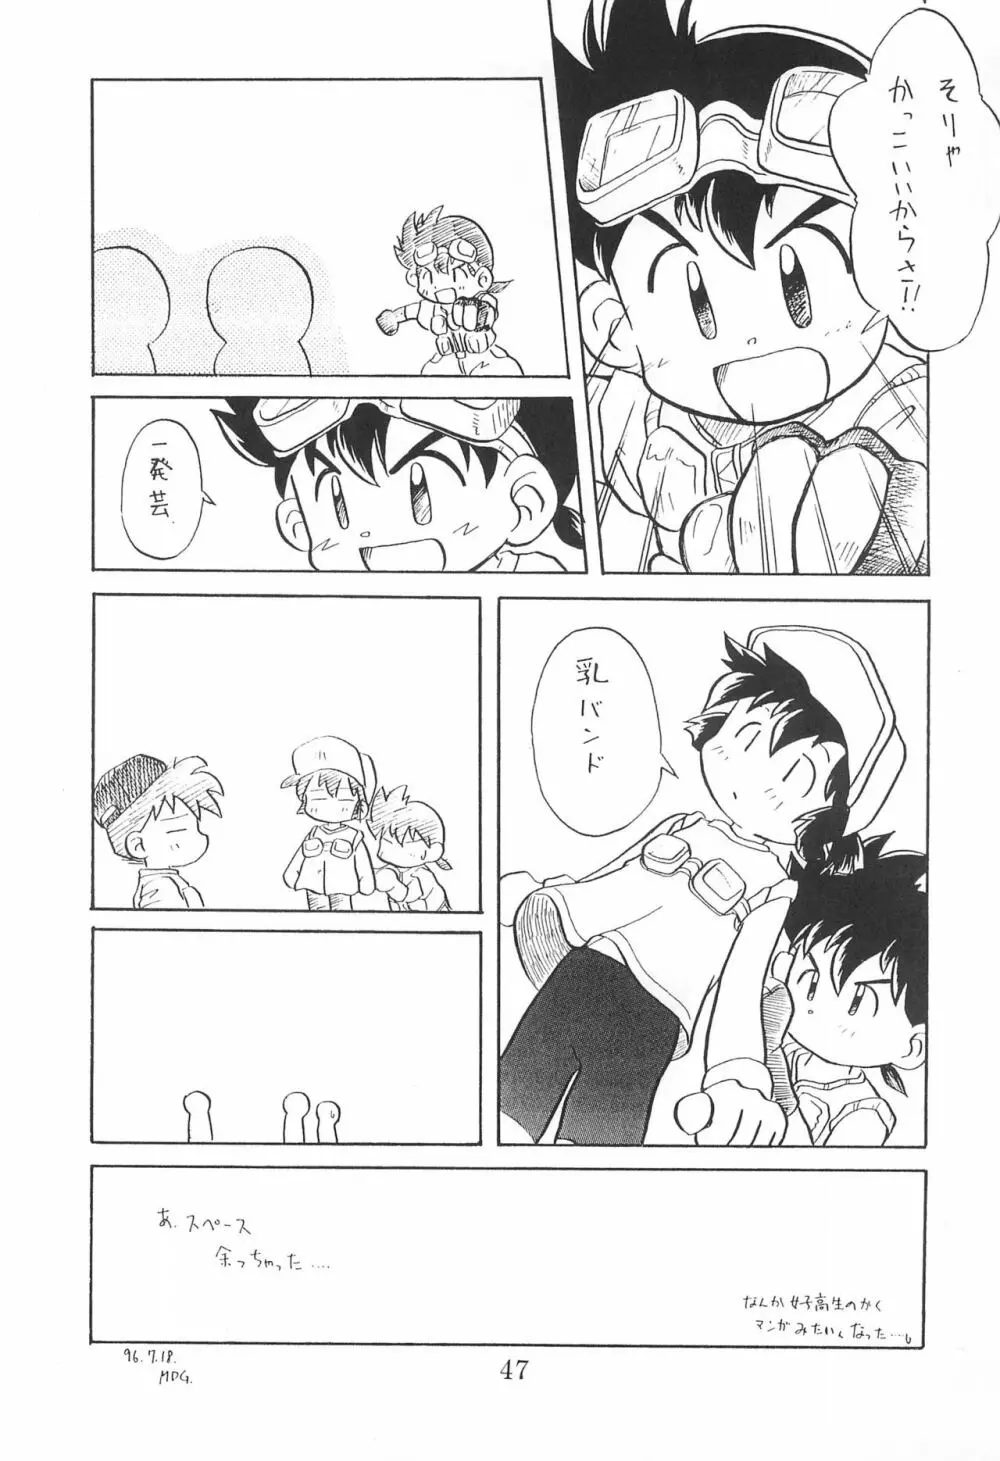 田楽'97 - page47